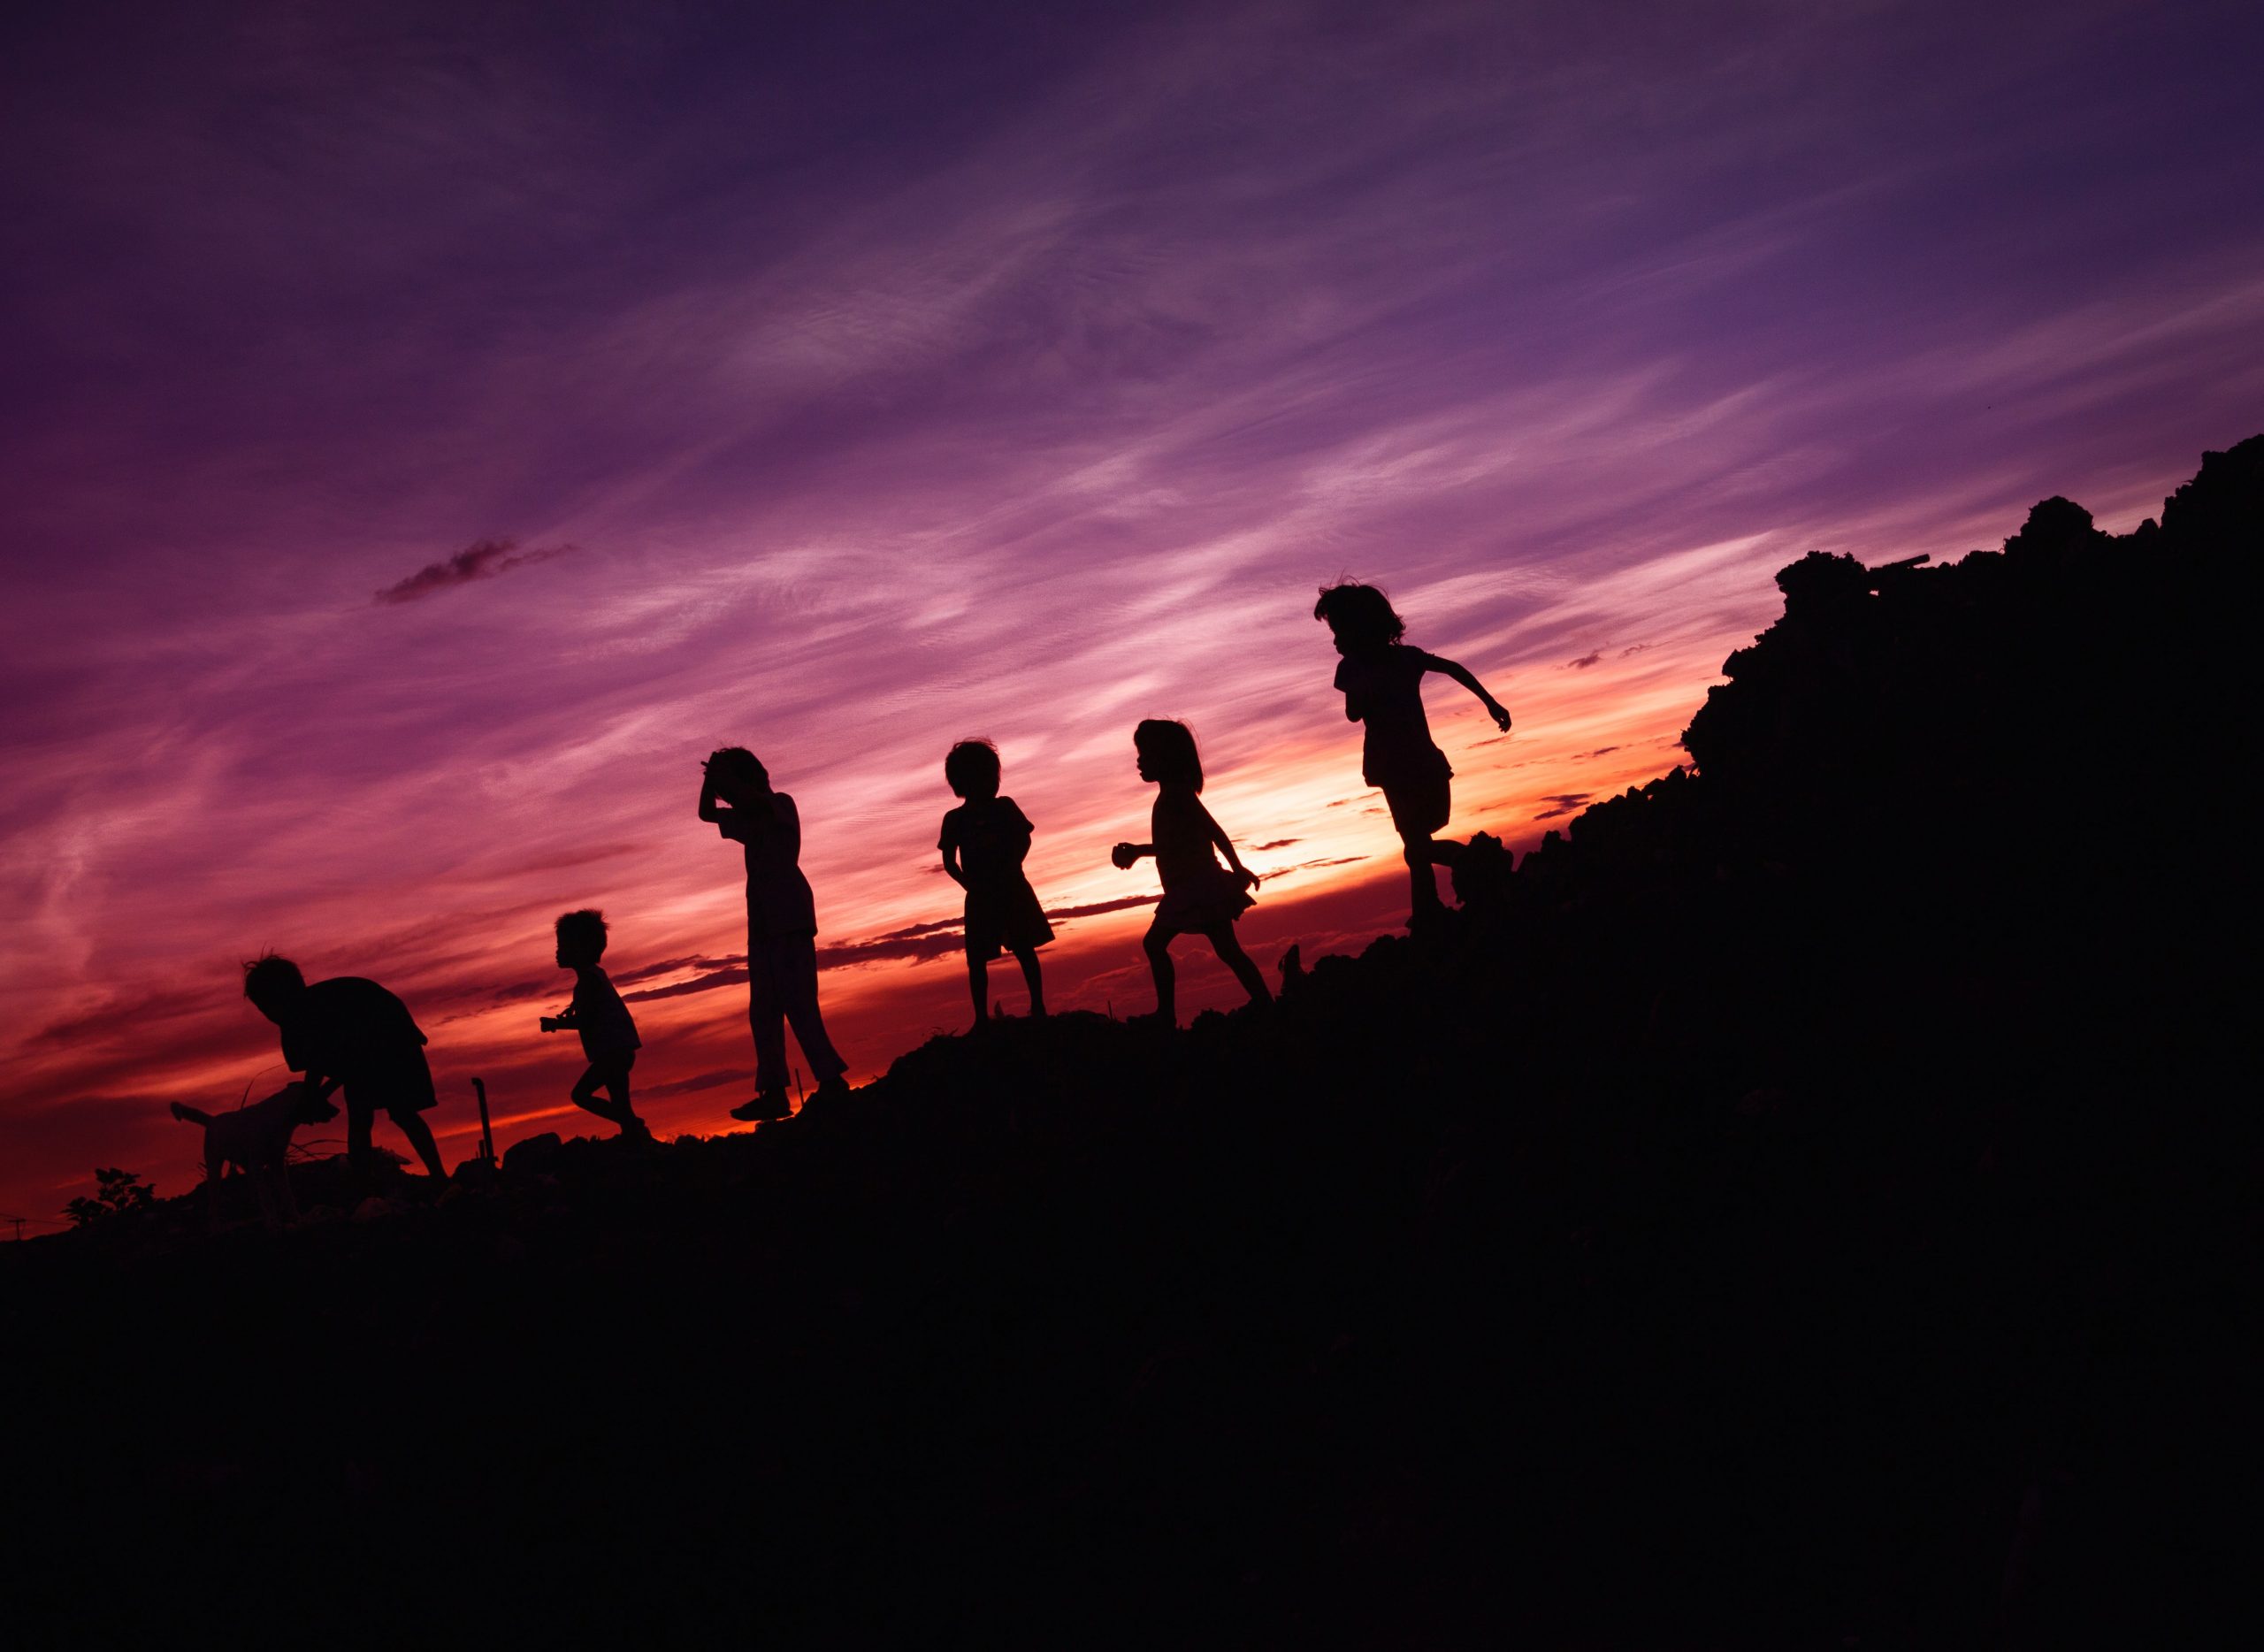 Fotografia de um pôr-do-sol. Nela, é possível ver a silhueta de seis crianças descendo uma colina.